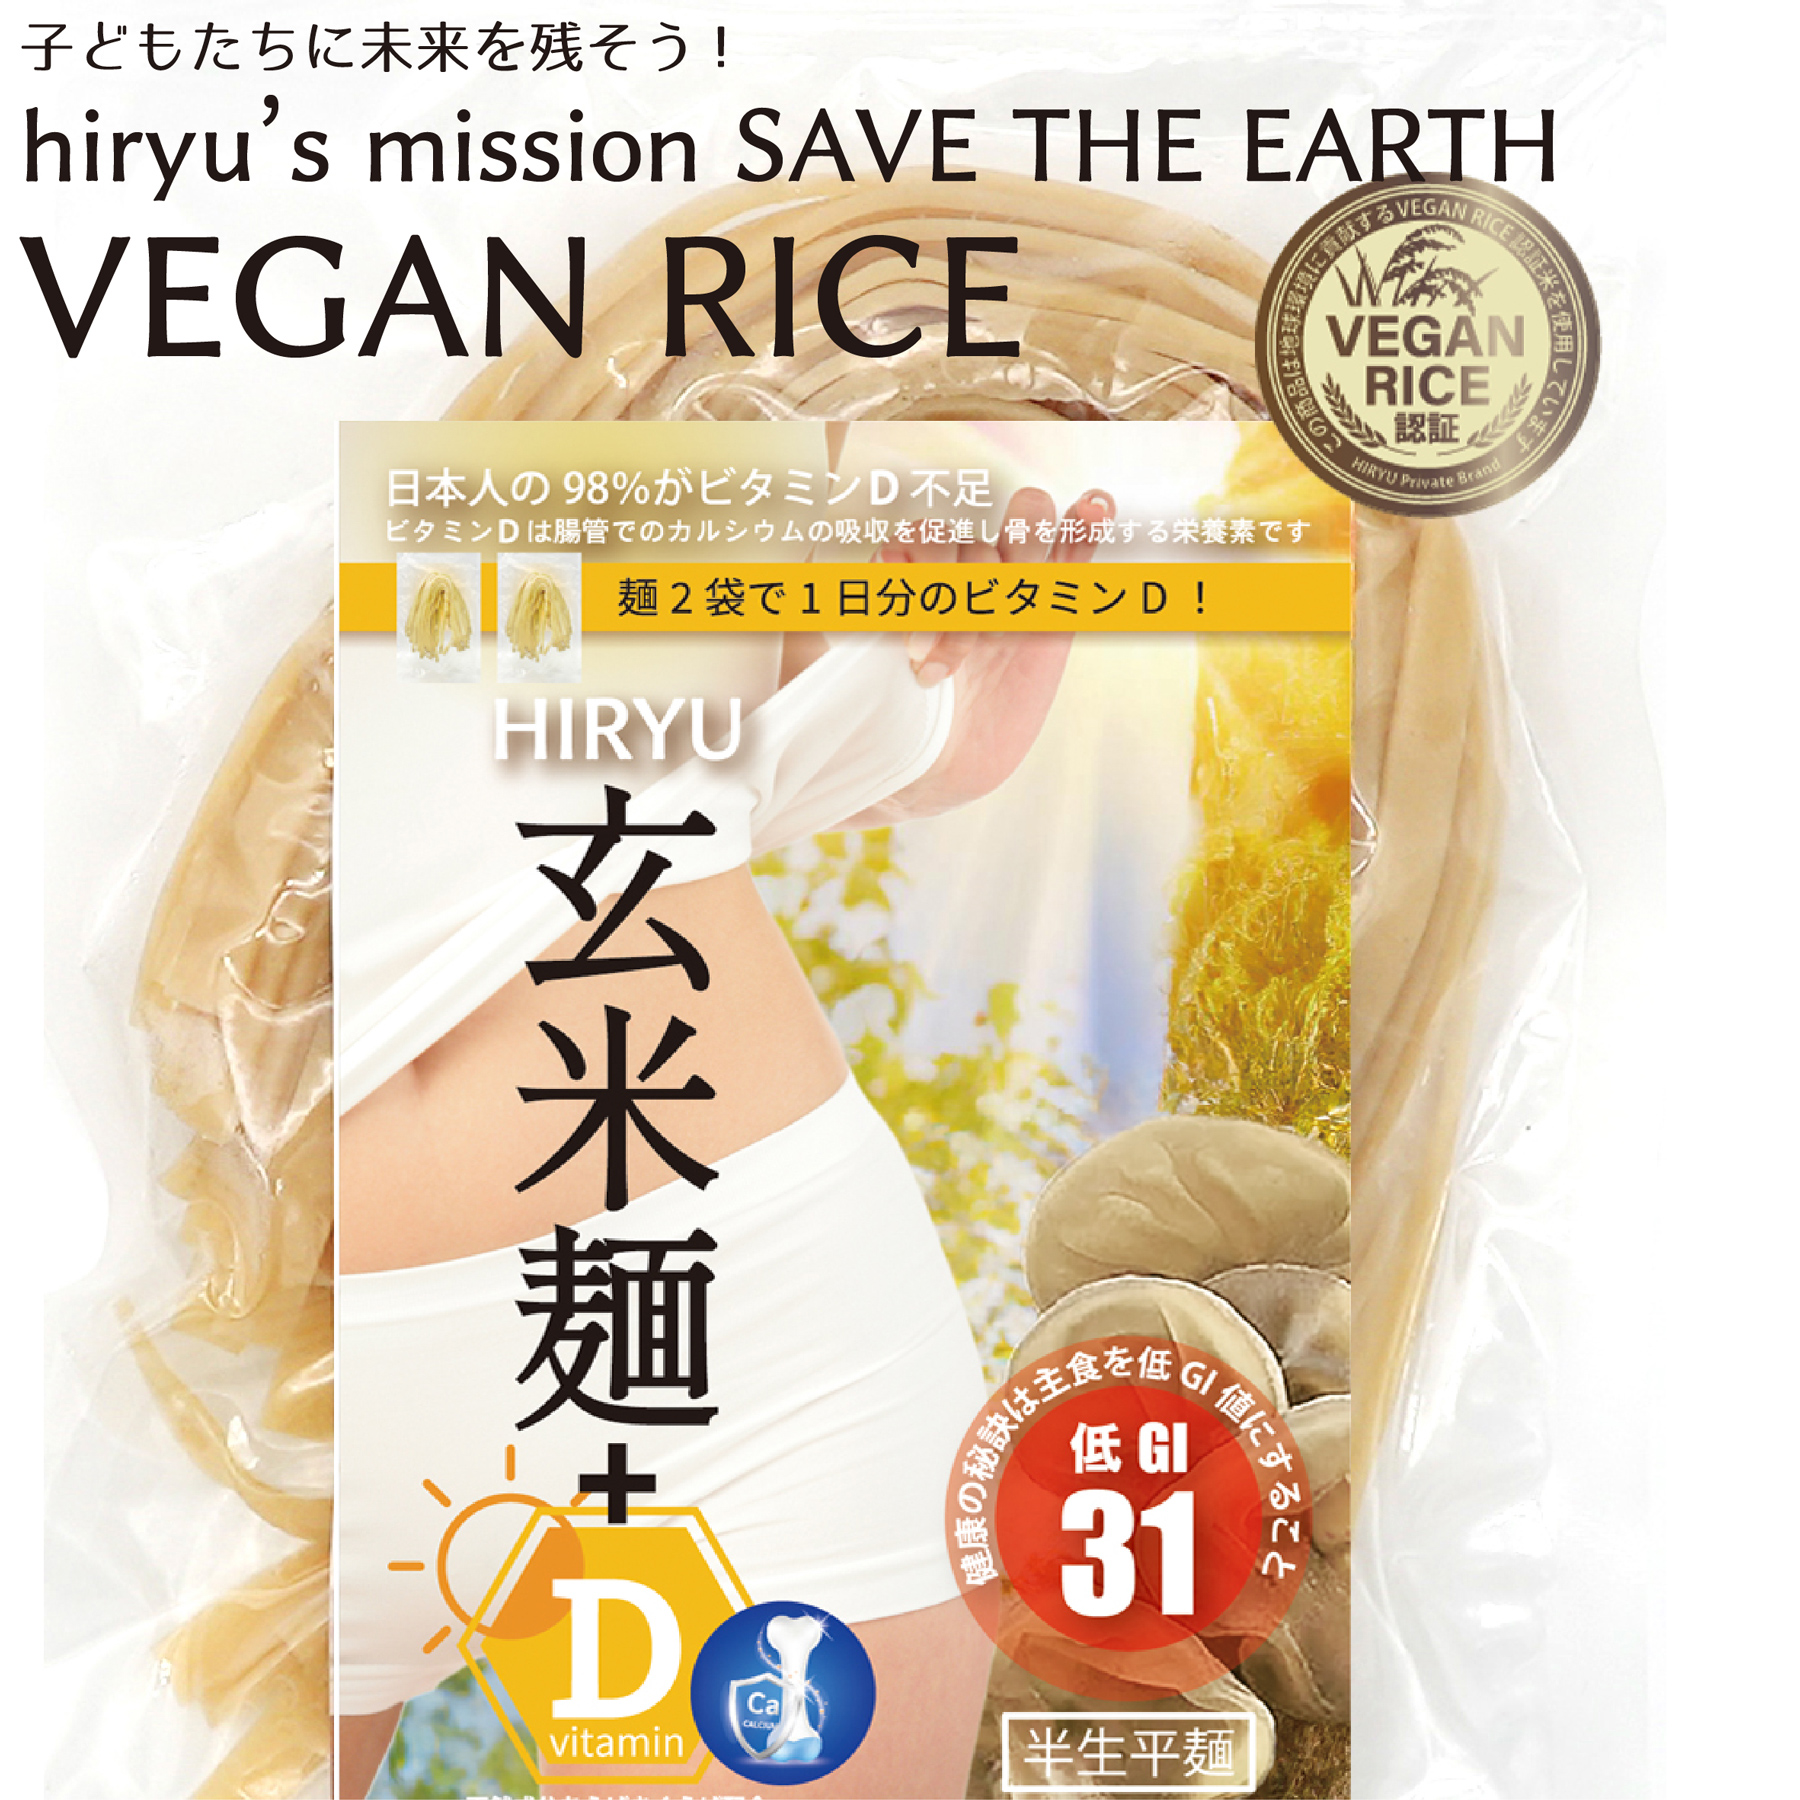 玄米麺+D  平麺 半生 農薬・肥料不使用 GI値31  VEGAN RICE